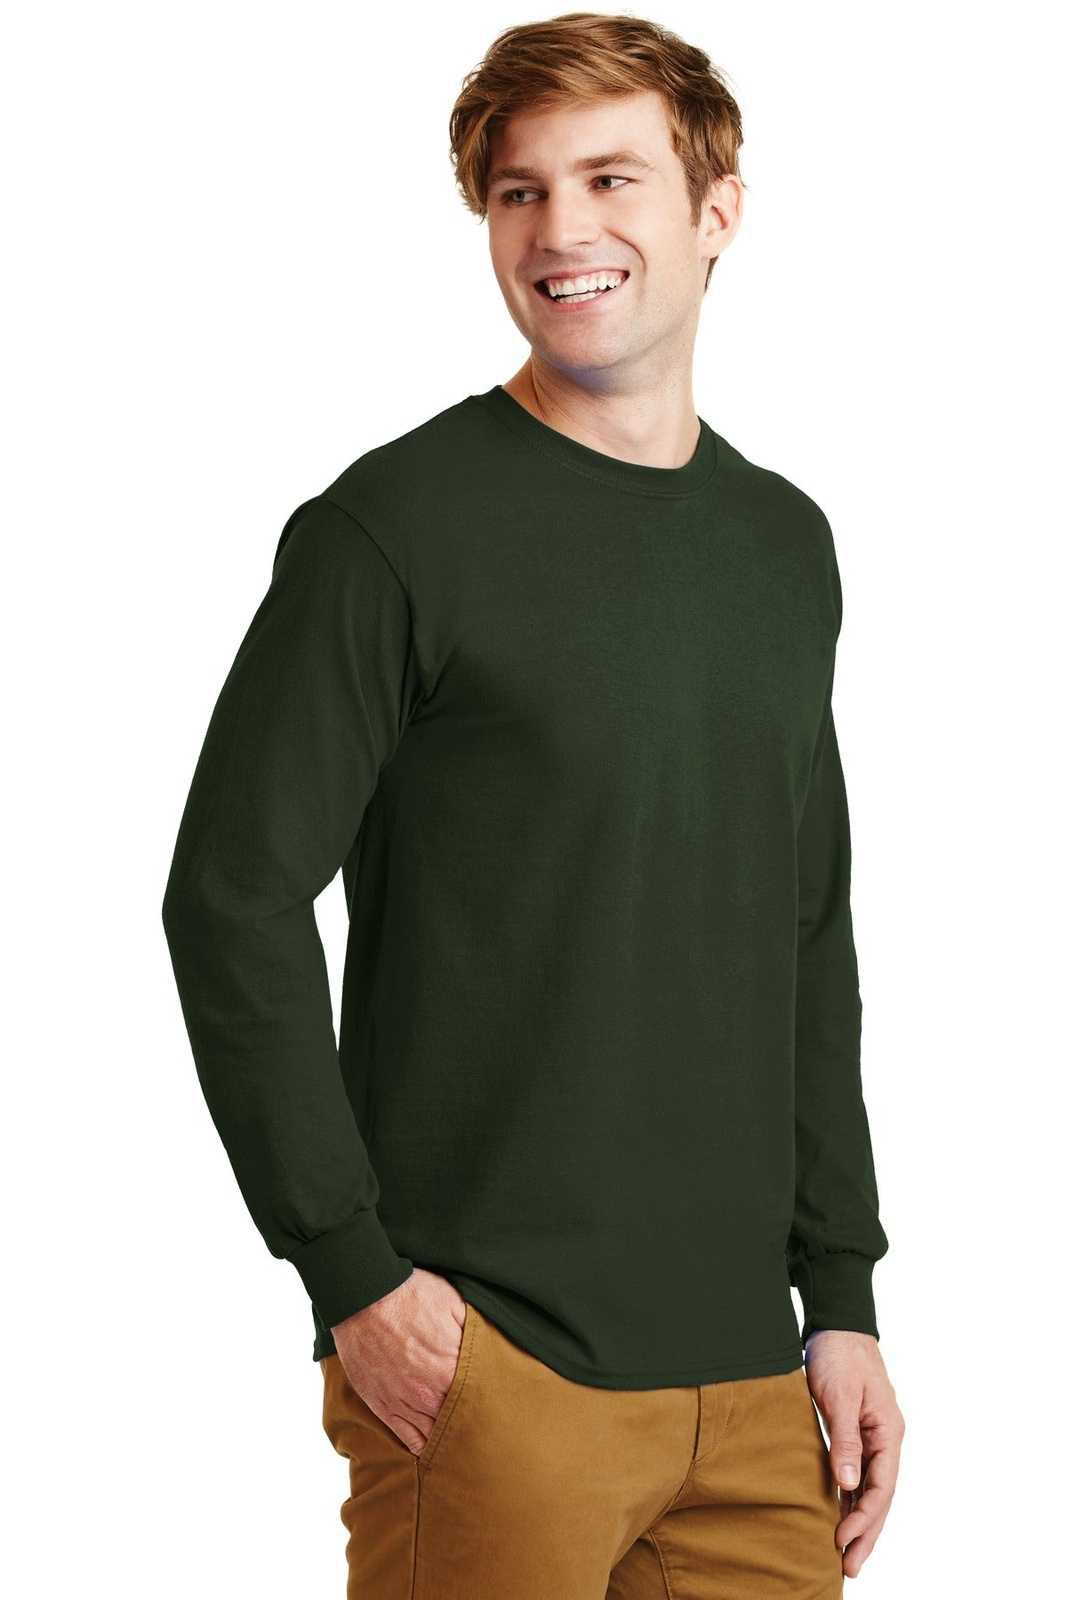 Gildan G2400 Ultra Cotton 100% Cotton Long Sleeve T-Shirt - Forest Green - HIT a Double